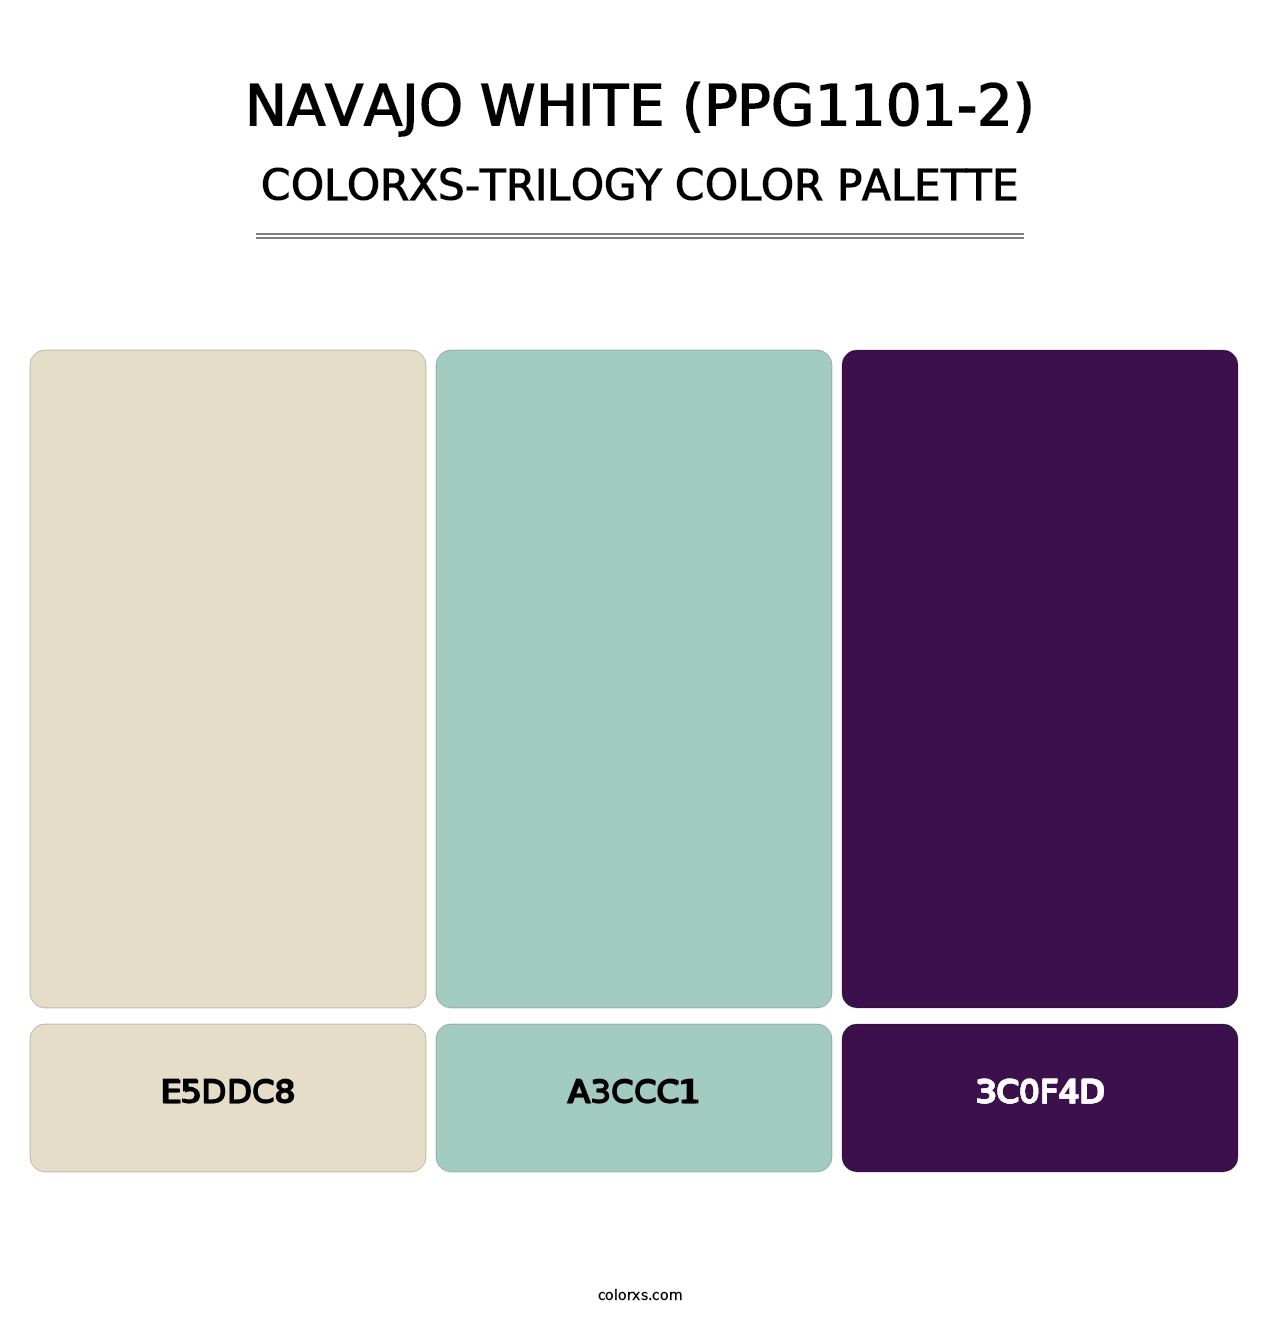 Navajo White (PPG1101-2) - Colorxs Trilogy Palette